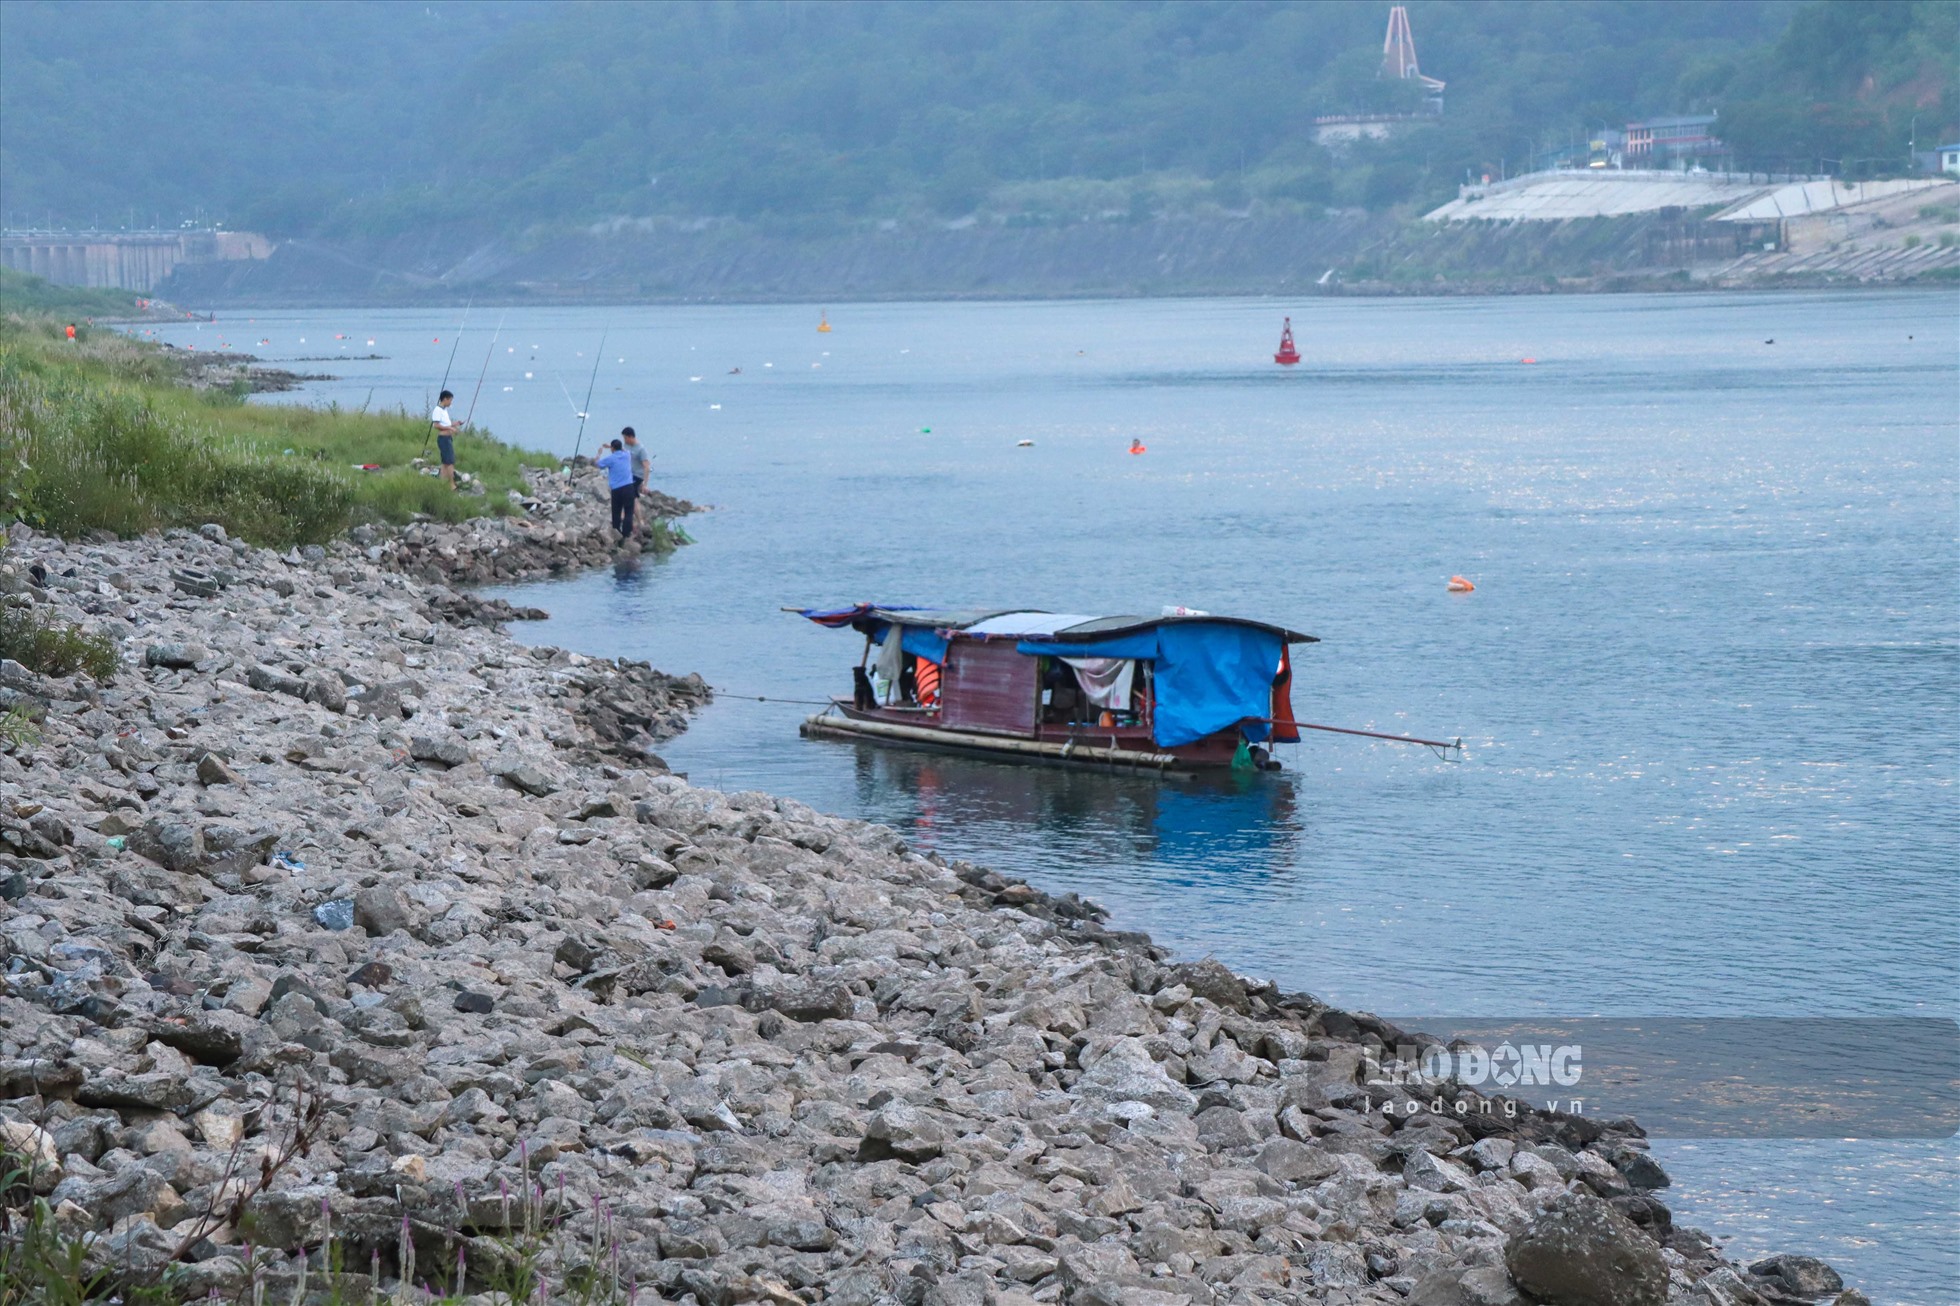 Người dân sống xung quanh dòng sông Đà vui mừng, phấn khởi khi thấy mỗi ngày nước lại dâng cao hơn hôm trước một chút. Những hoạt động của người dân như câu cá, tắm sông lại diễn ra bình thường.